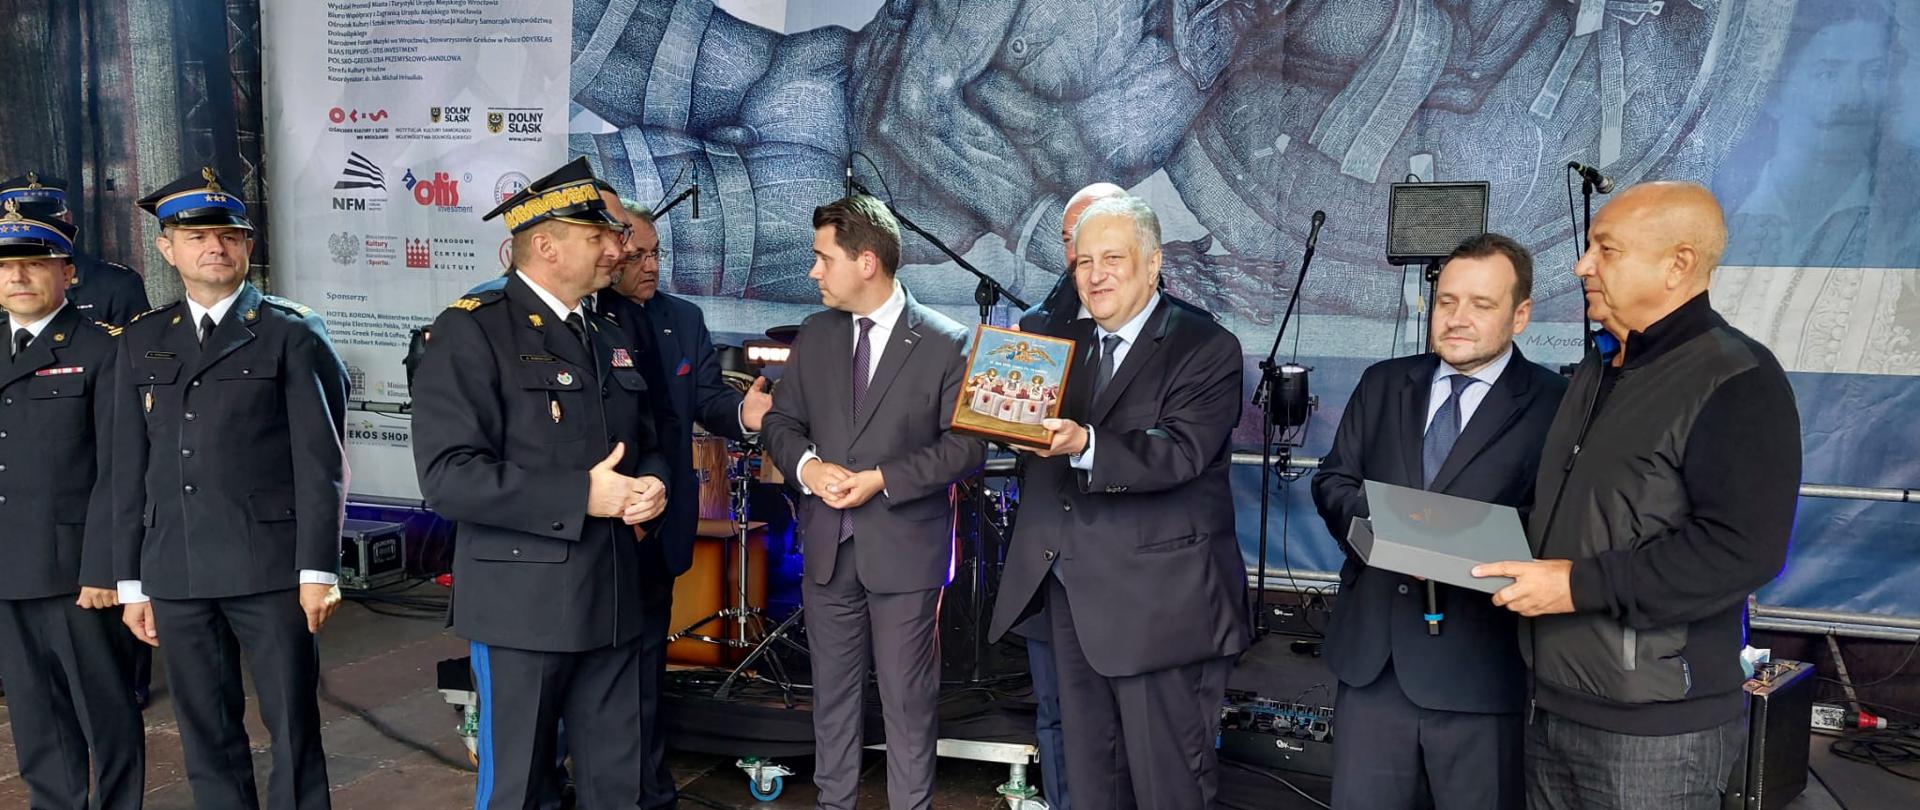 Zastępca KG PSP i inni mężczyźni na scenie podczas podziękowań za misję polskich strażaków, Ambasador Grecji prezentuje w dłoniach ikonę, którą otrzyma Zastępca KG PSP